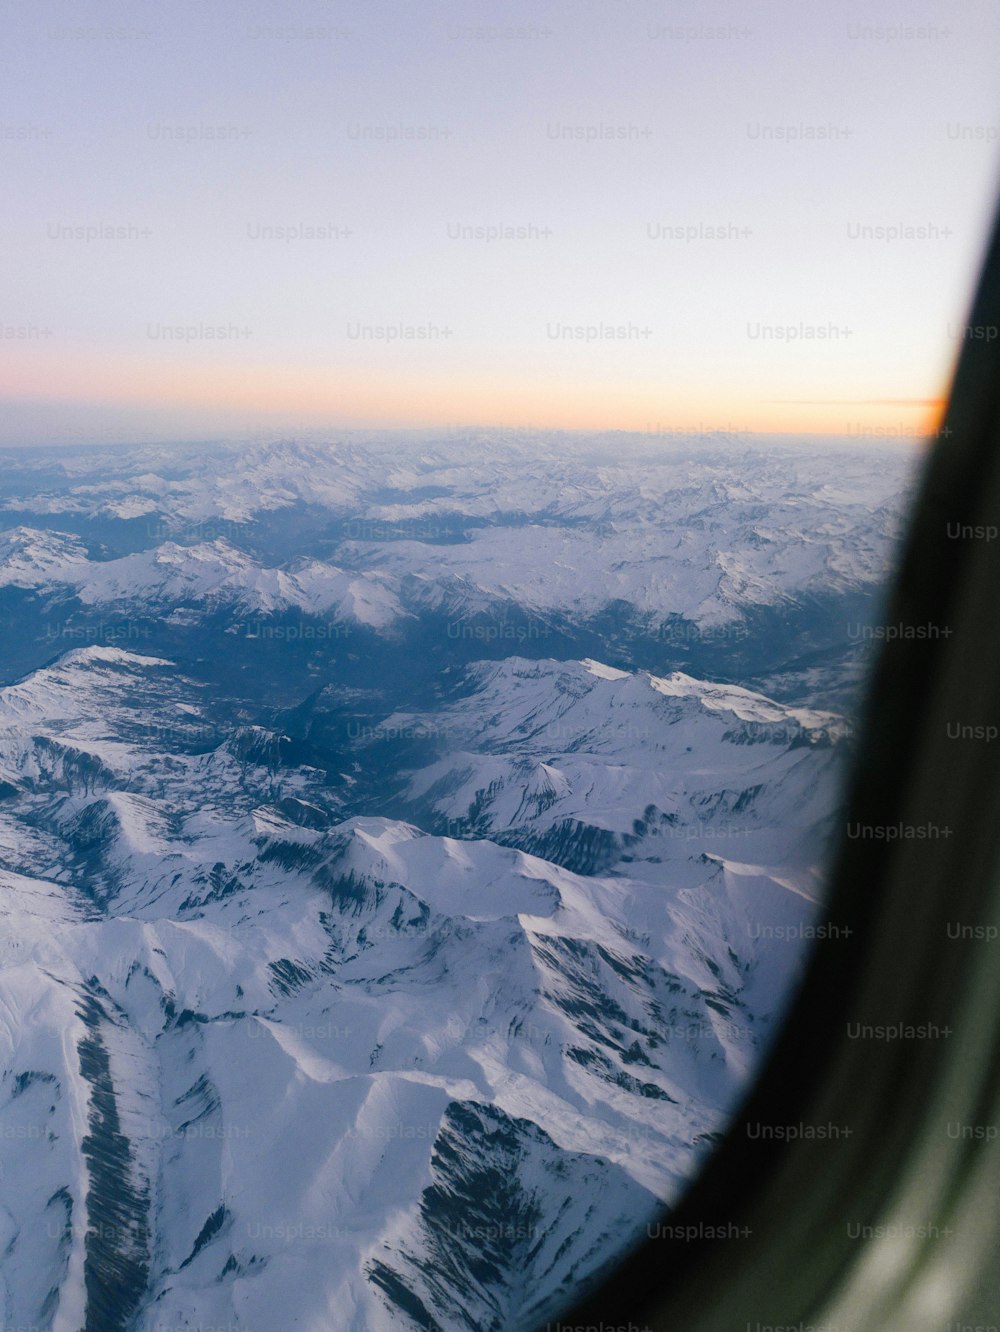 Una vista de una cadena montañosa desde la ventana de un avión